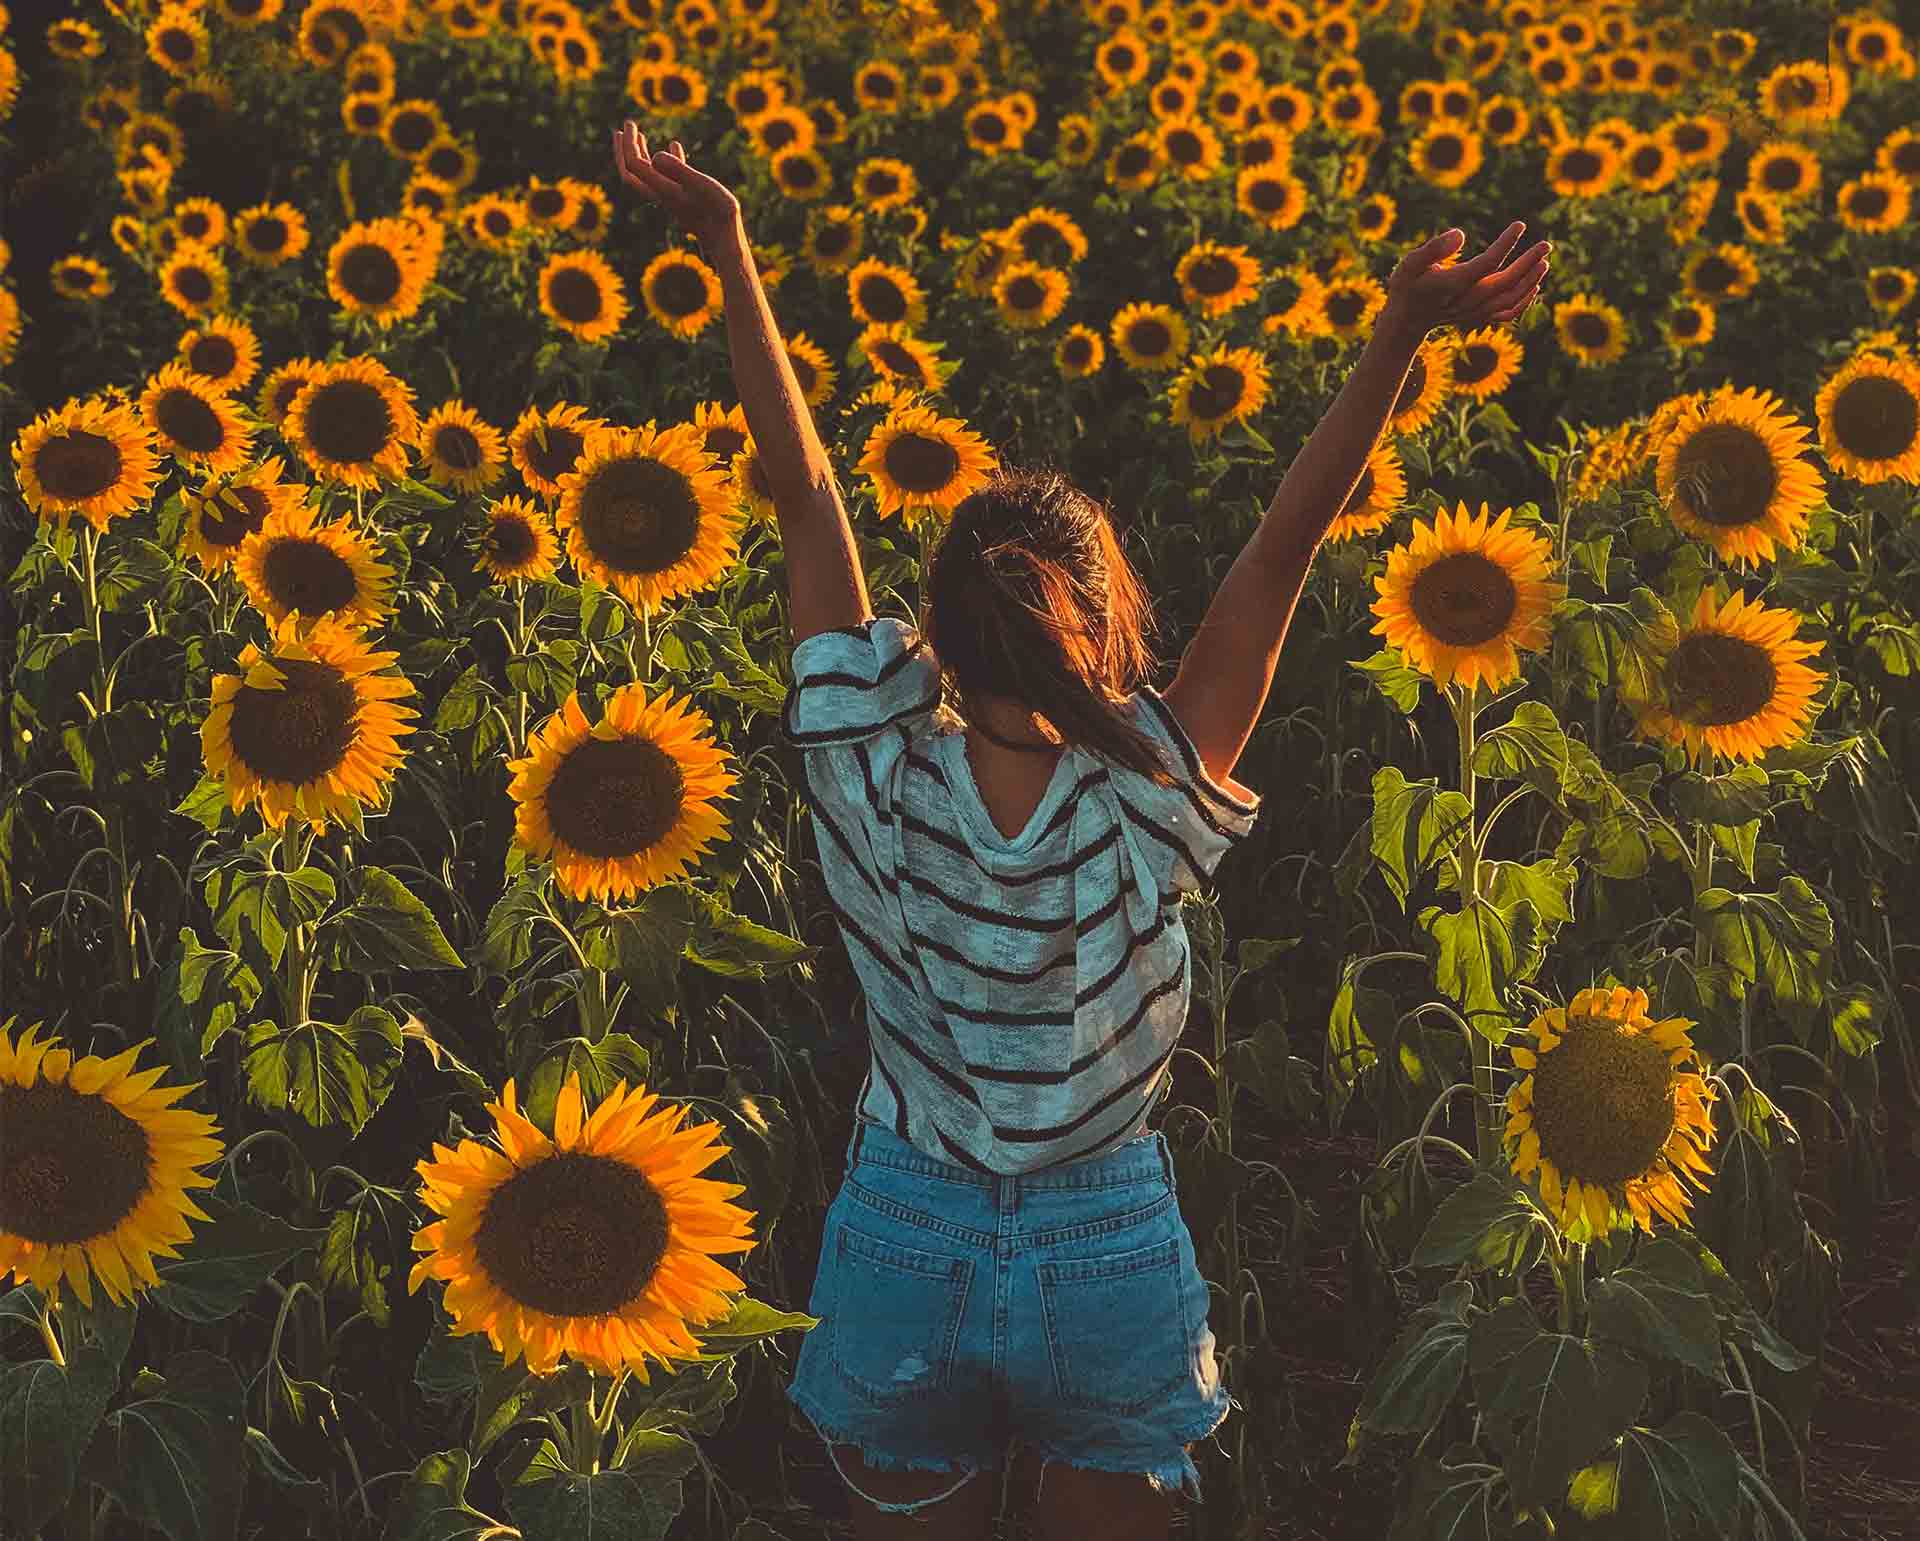 Ljeto godišnje doba djevojka u polju suncokreta